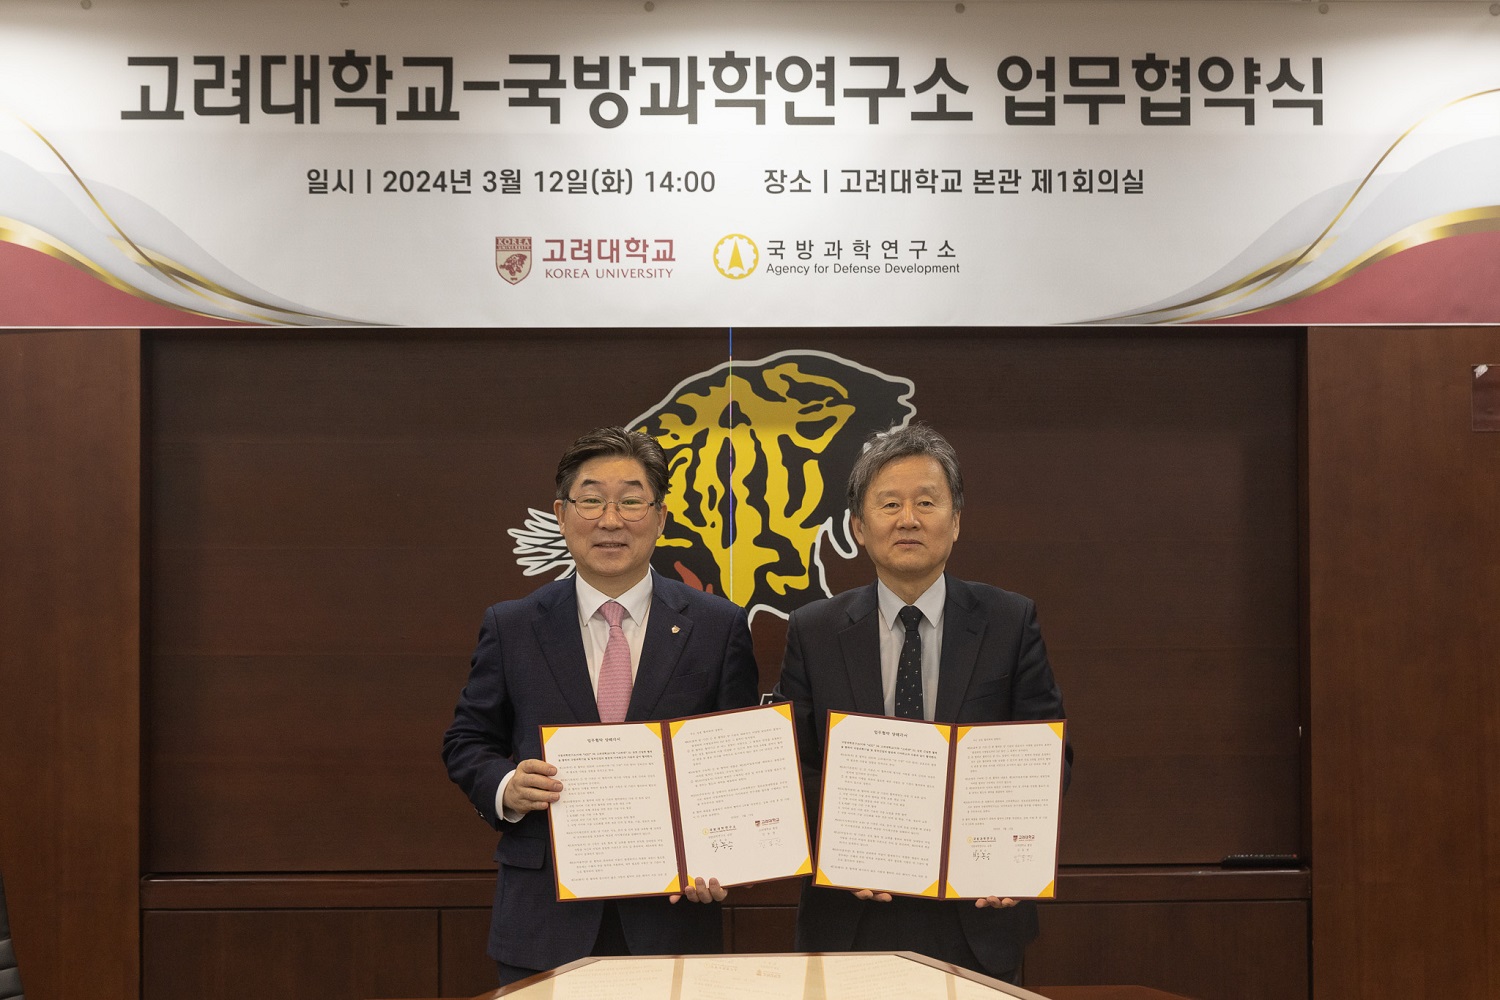 김동원 총장(왼쪽)과 박종승 국방과학연구소장이 사진을 찍고 있다.